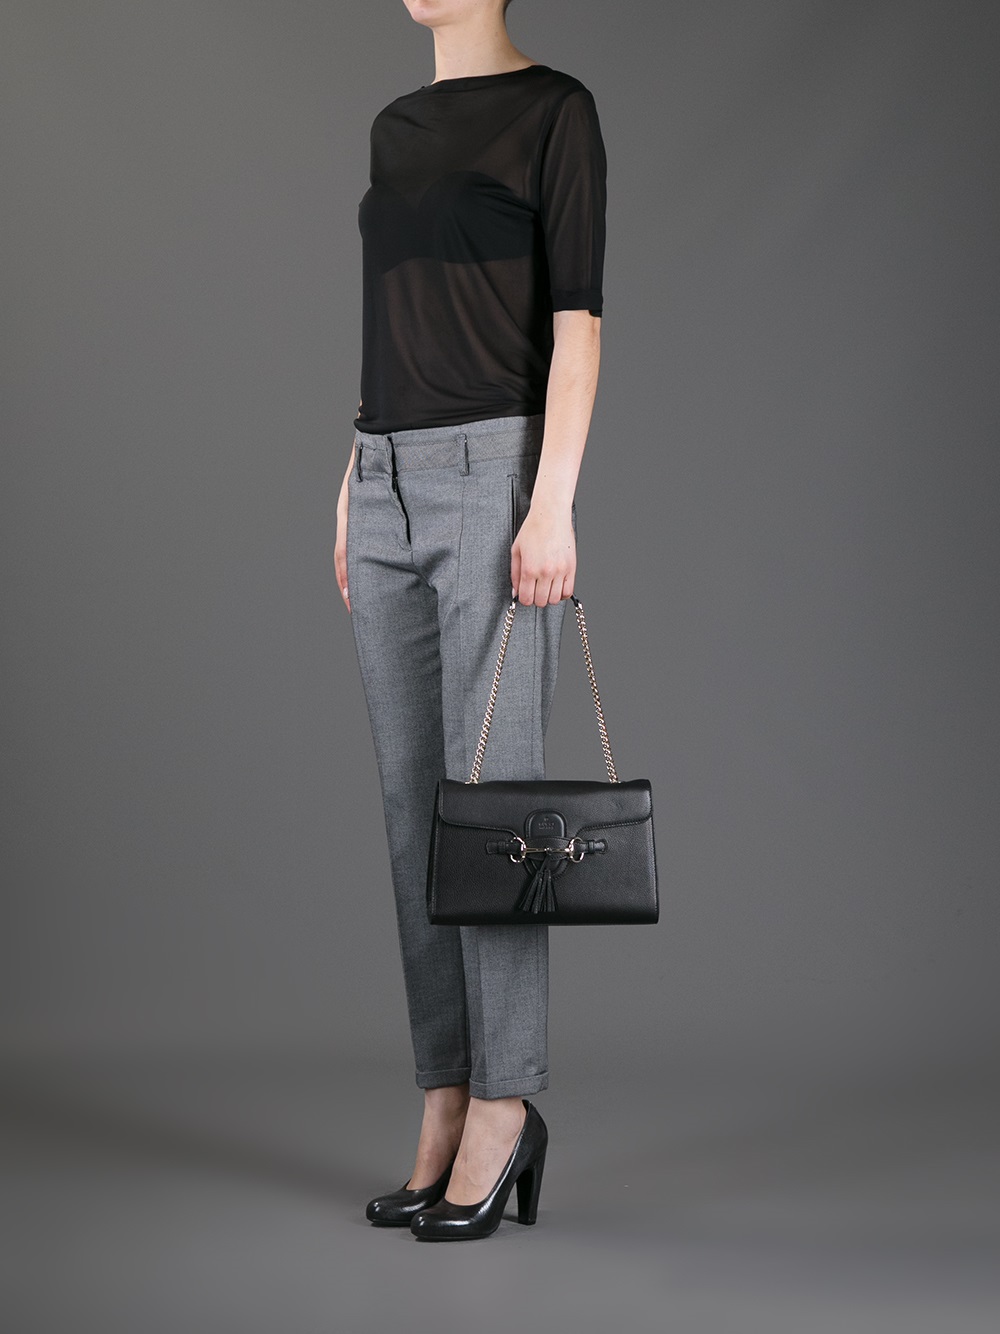 Gucci Emily Shoulder Bag in Black - Lyst